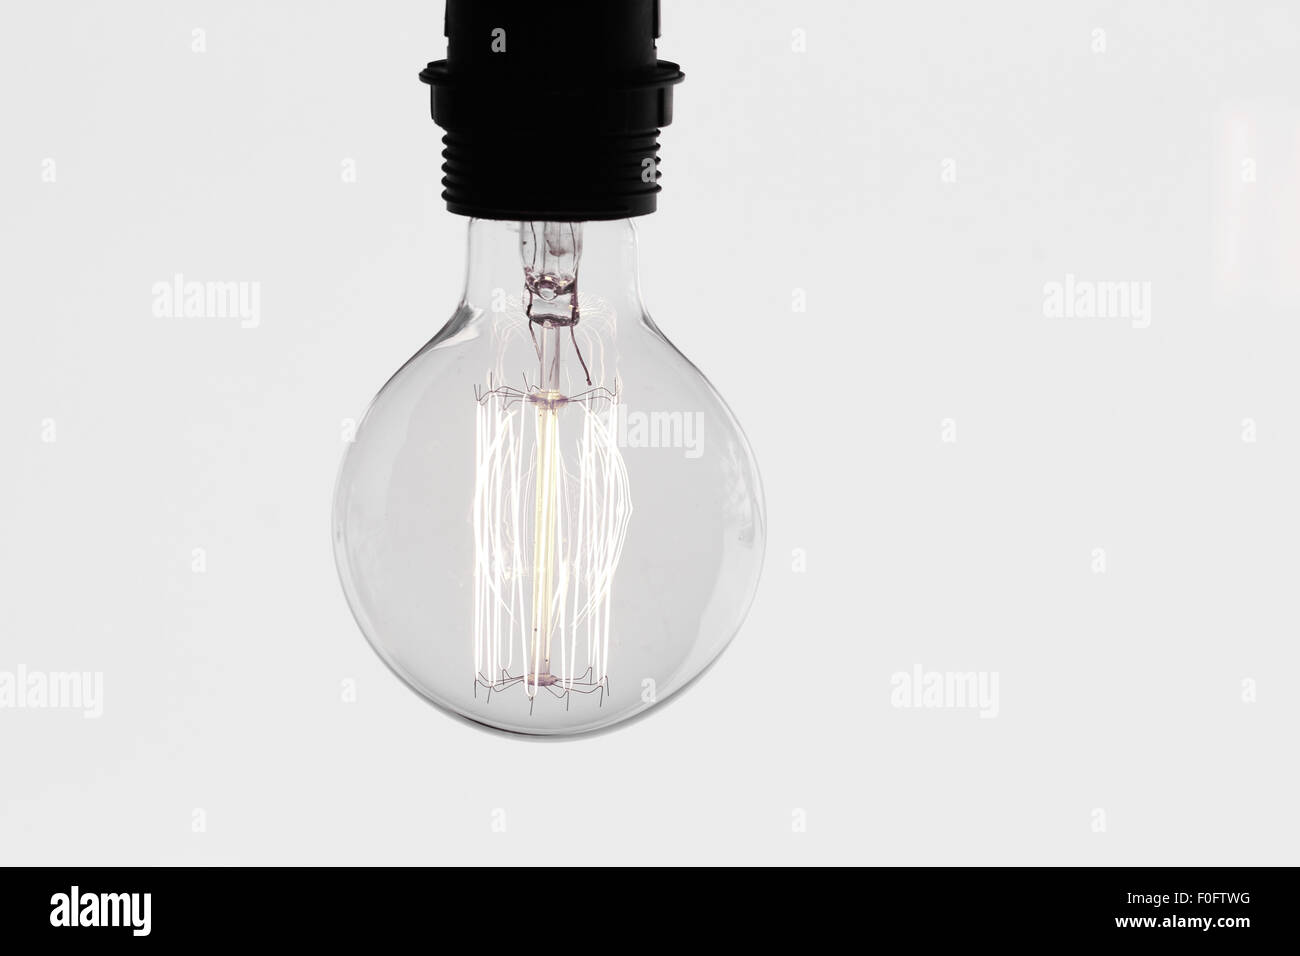 Close up vintage lampadina della luce come concetto creativo Foto Stock